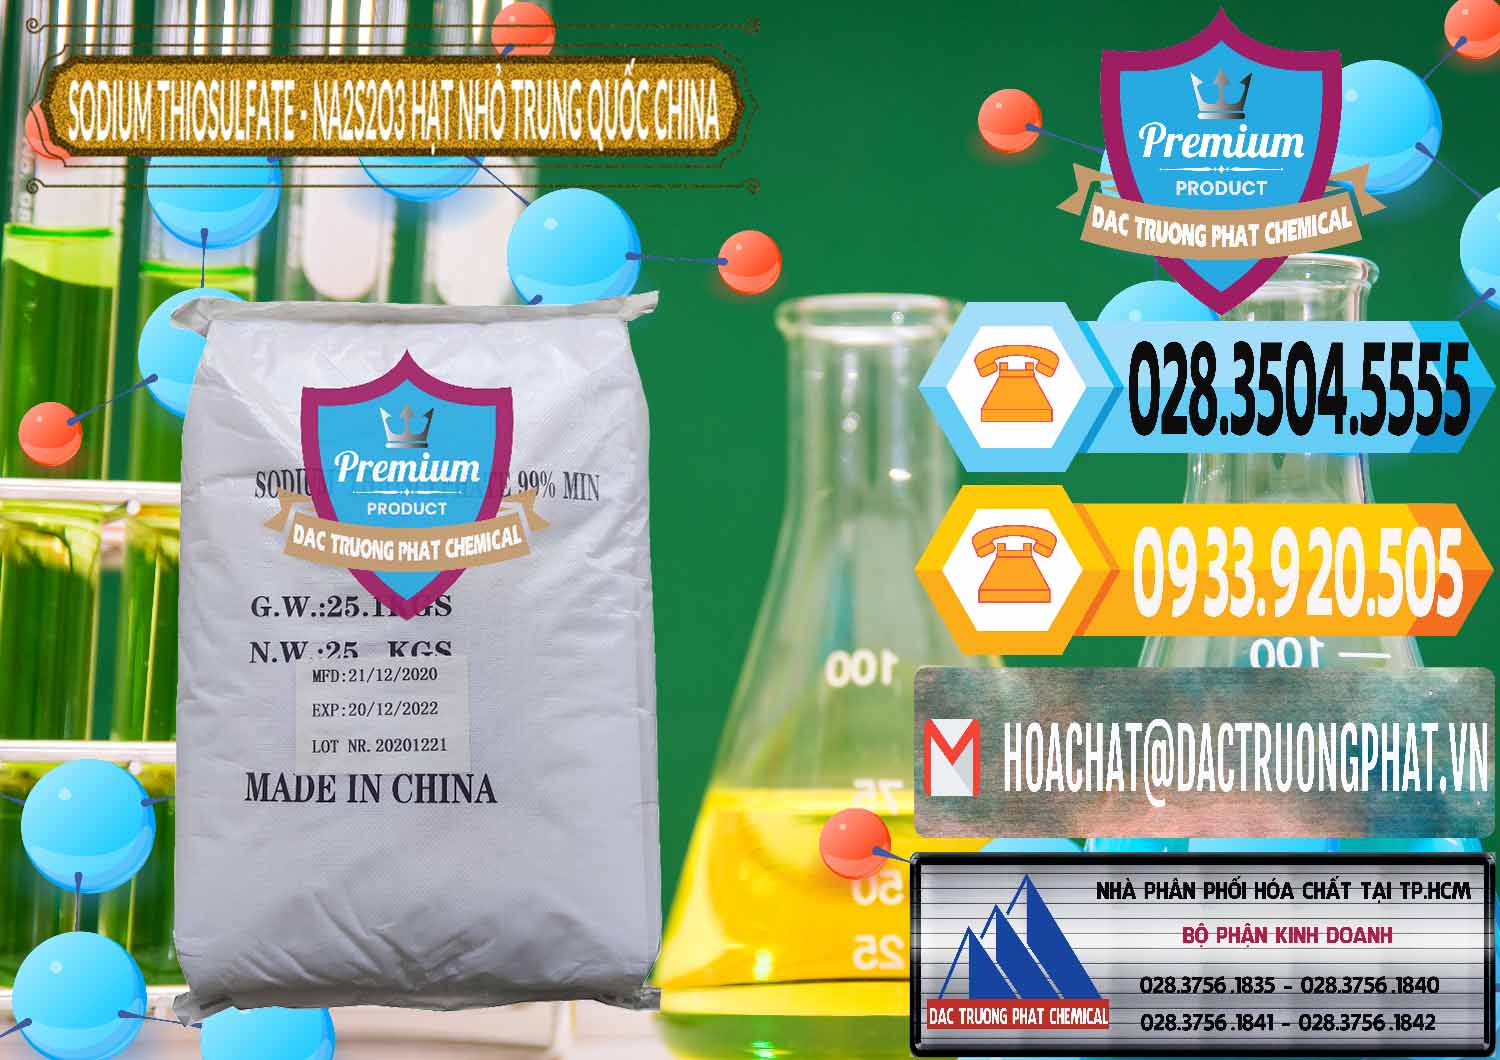 Công ty bán _ cung cấp Sodium Thiosulfate - NA2S2O3 Hạt Nhỏ Trung Quốc China - 0204 - Cty chuyên nhập khẩu - cung cấp hóa chất tại TP.HCM - hoachattayrua.net